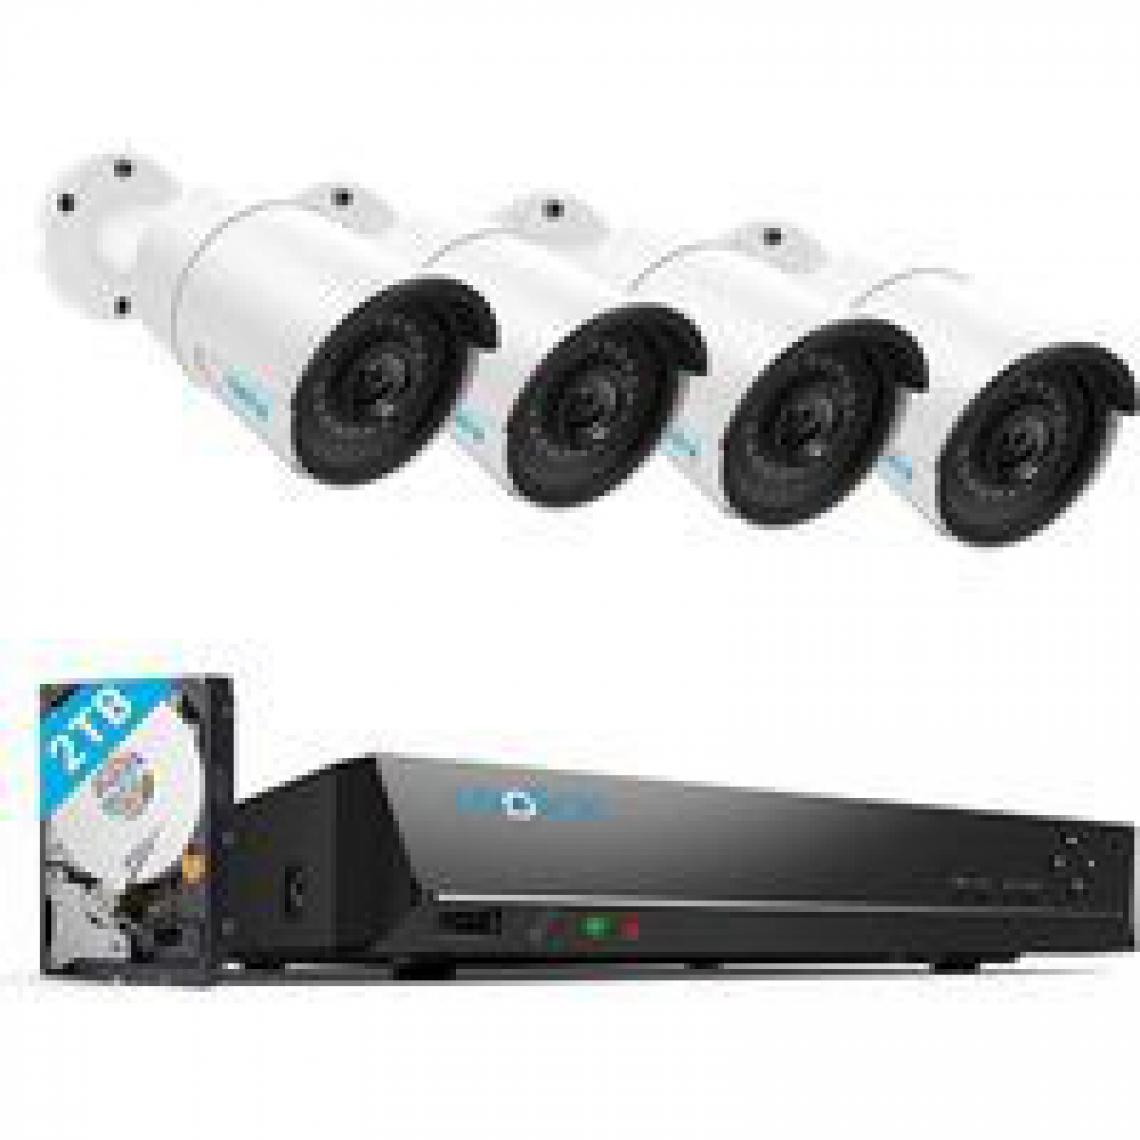 Reolink - Kit Caméra Vidéo Surveillance 5MP Extérieure - RLK8-410B4-5MP, 4X Caméra IP PoE avec 8CH 2To NVR, 30 M Vision Nocturne - Caméra de surveillance connectée